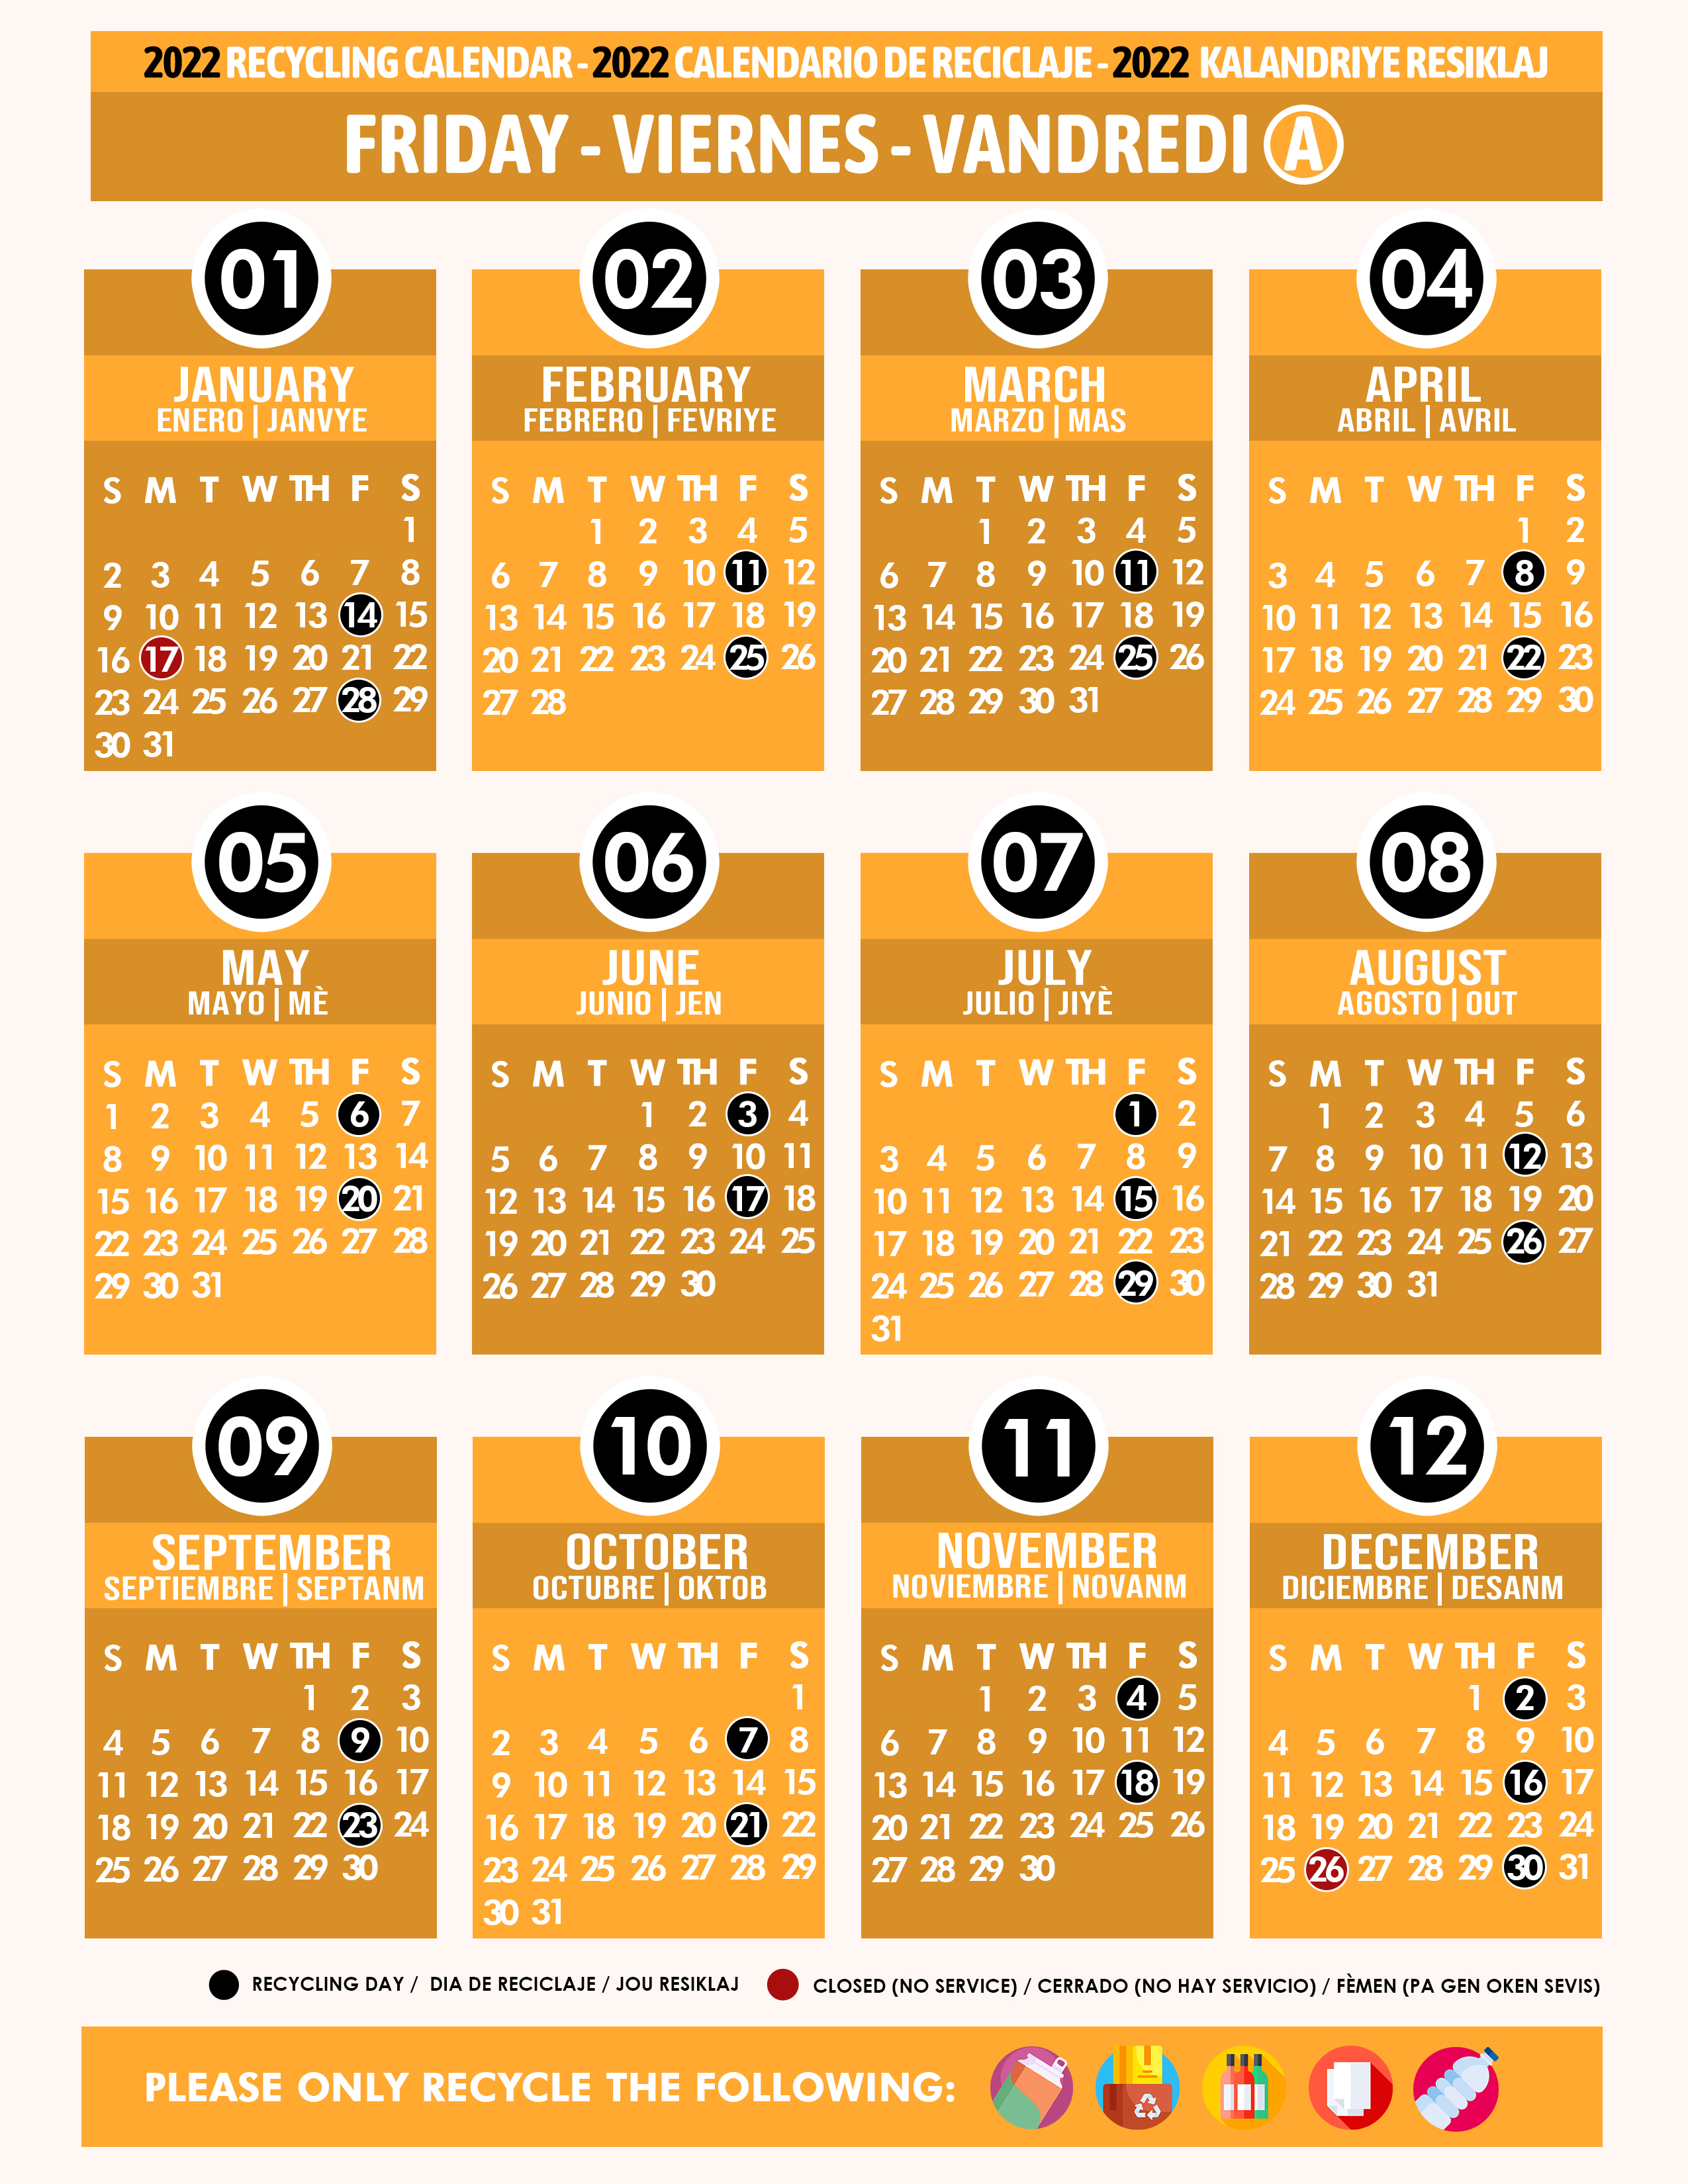 Miami Dade Recycling Schedule 2022 Recycling Calendar 2022 Friday A Orange - Miami